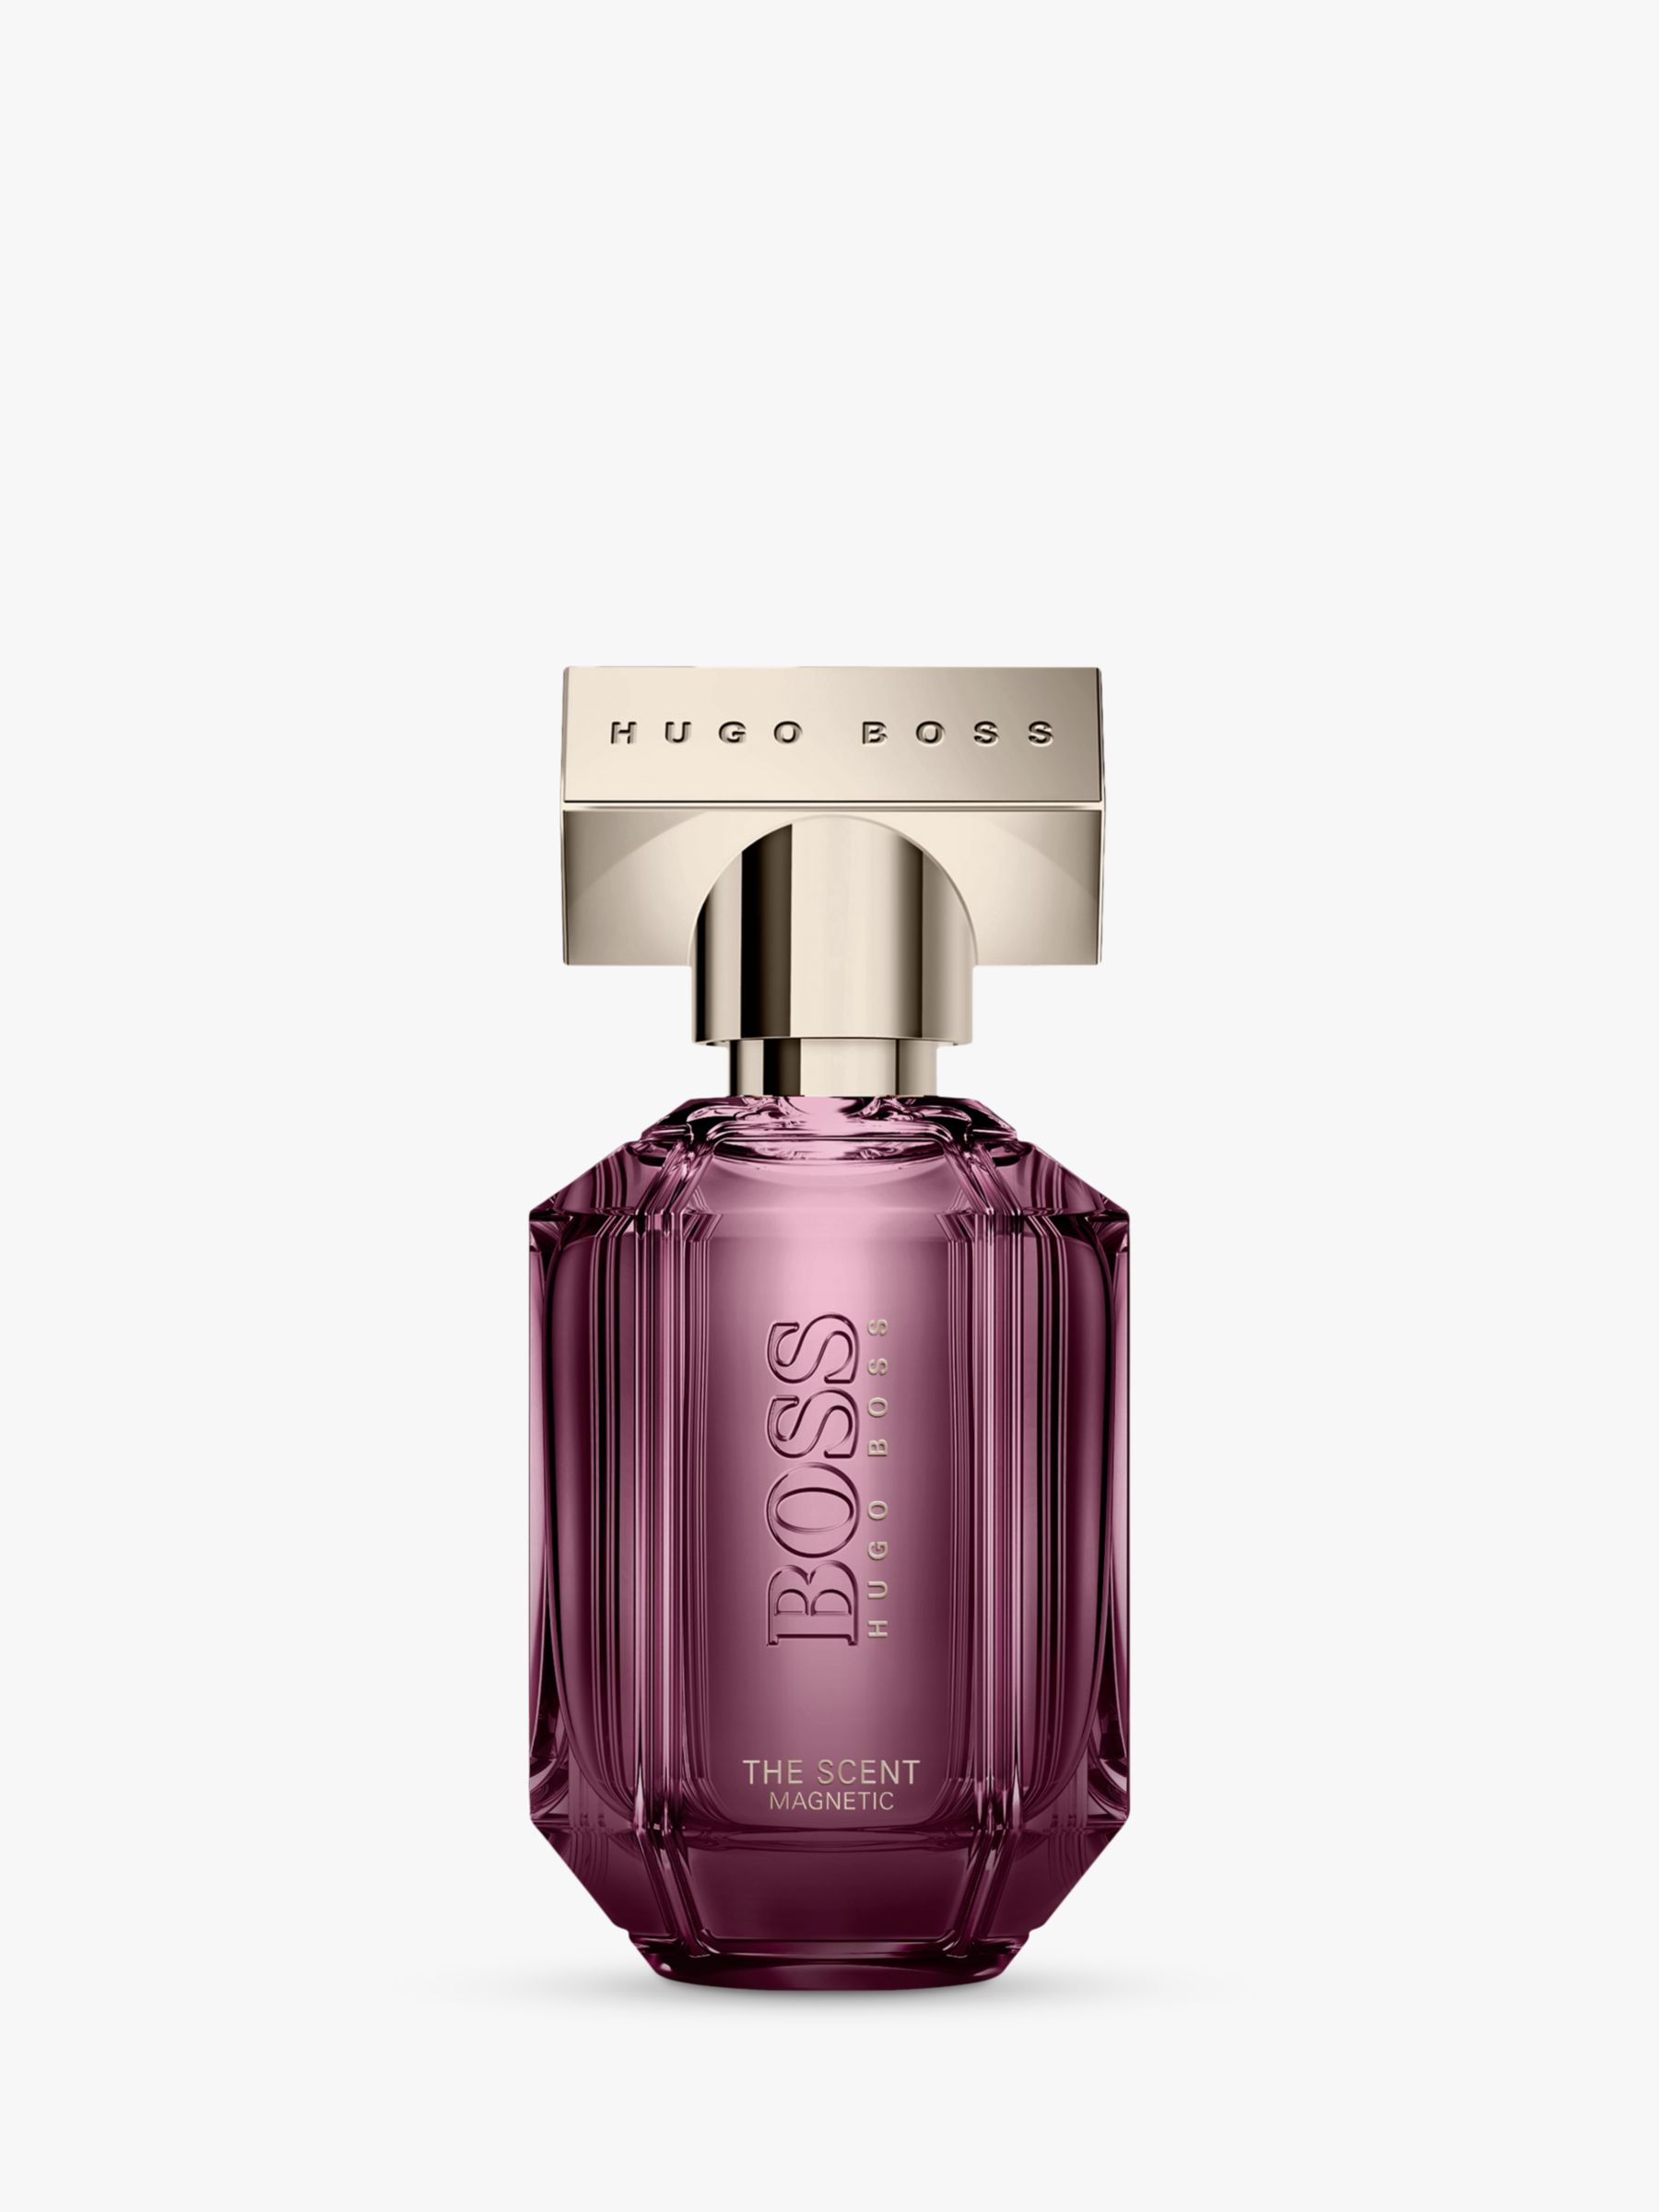 HUGO BOSS BOSS Bottled Eau de Parfum, 50ml at John Lewis & Partners